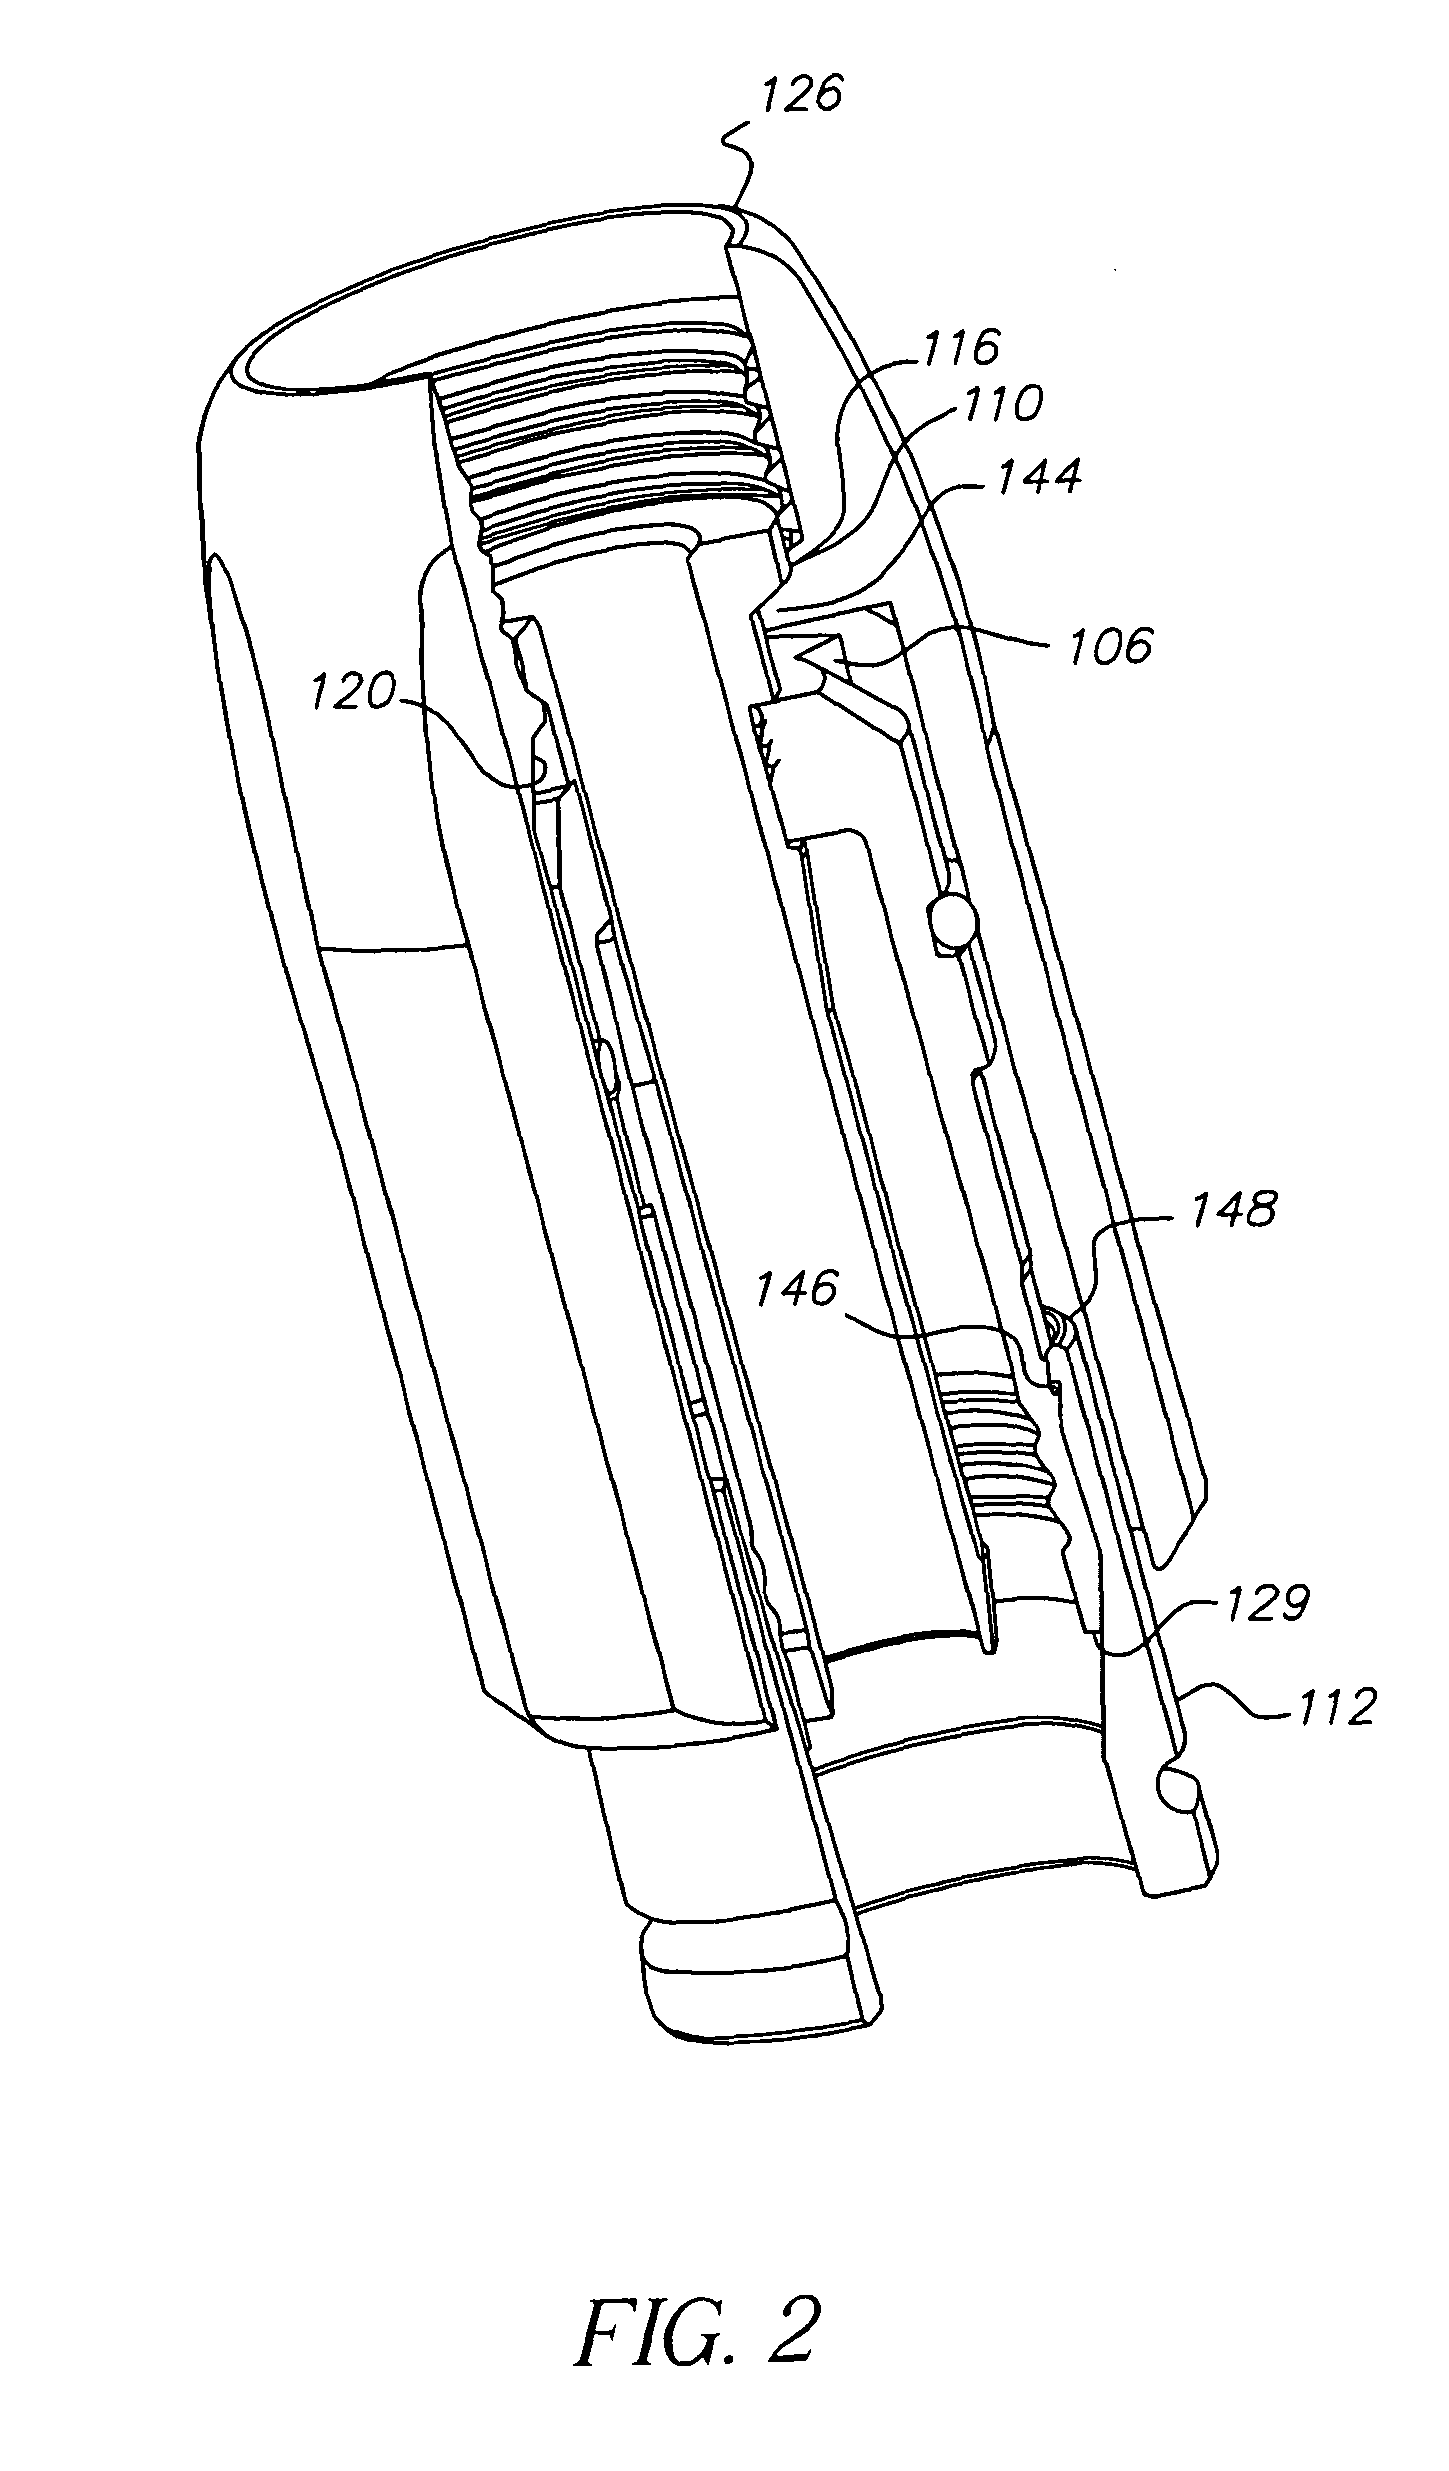 Coax connector having clutching mechanism